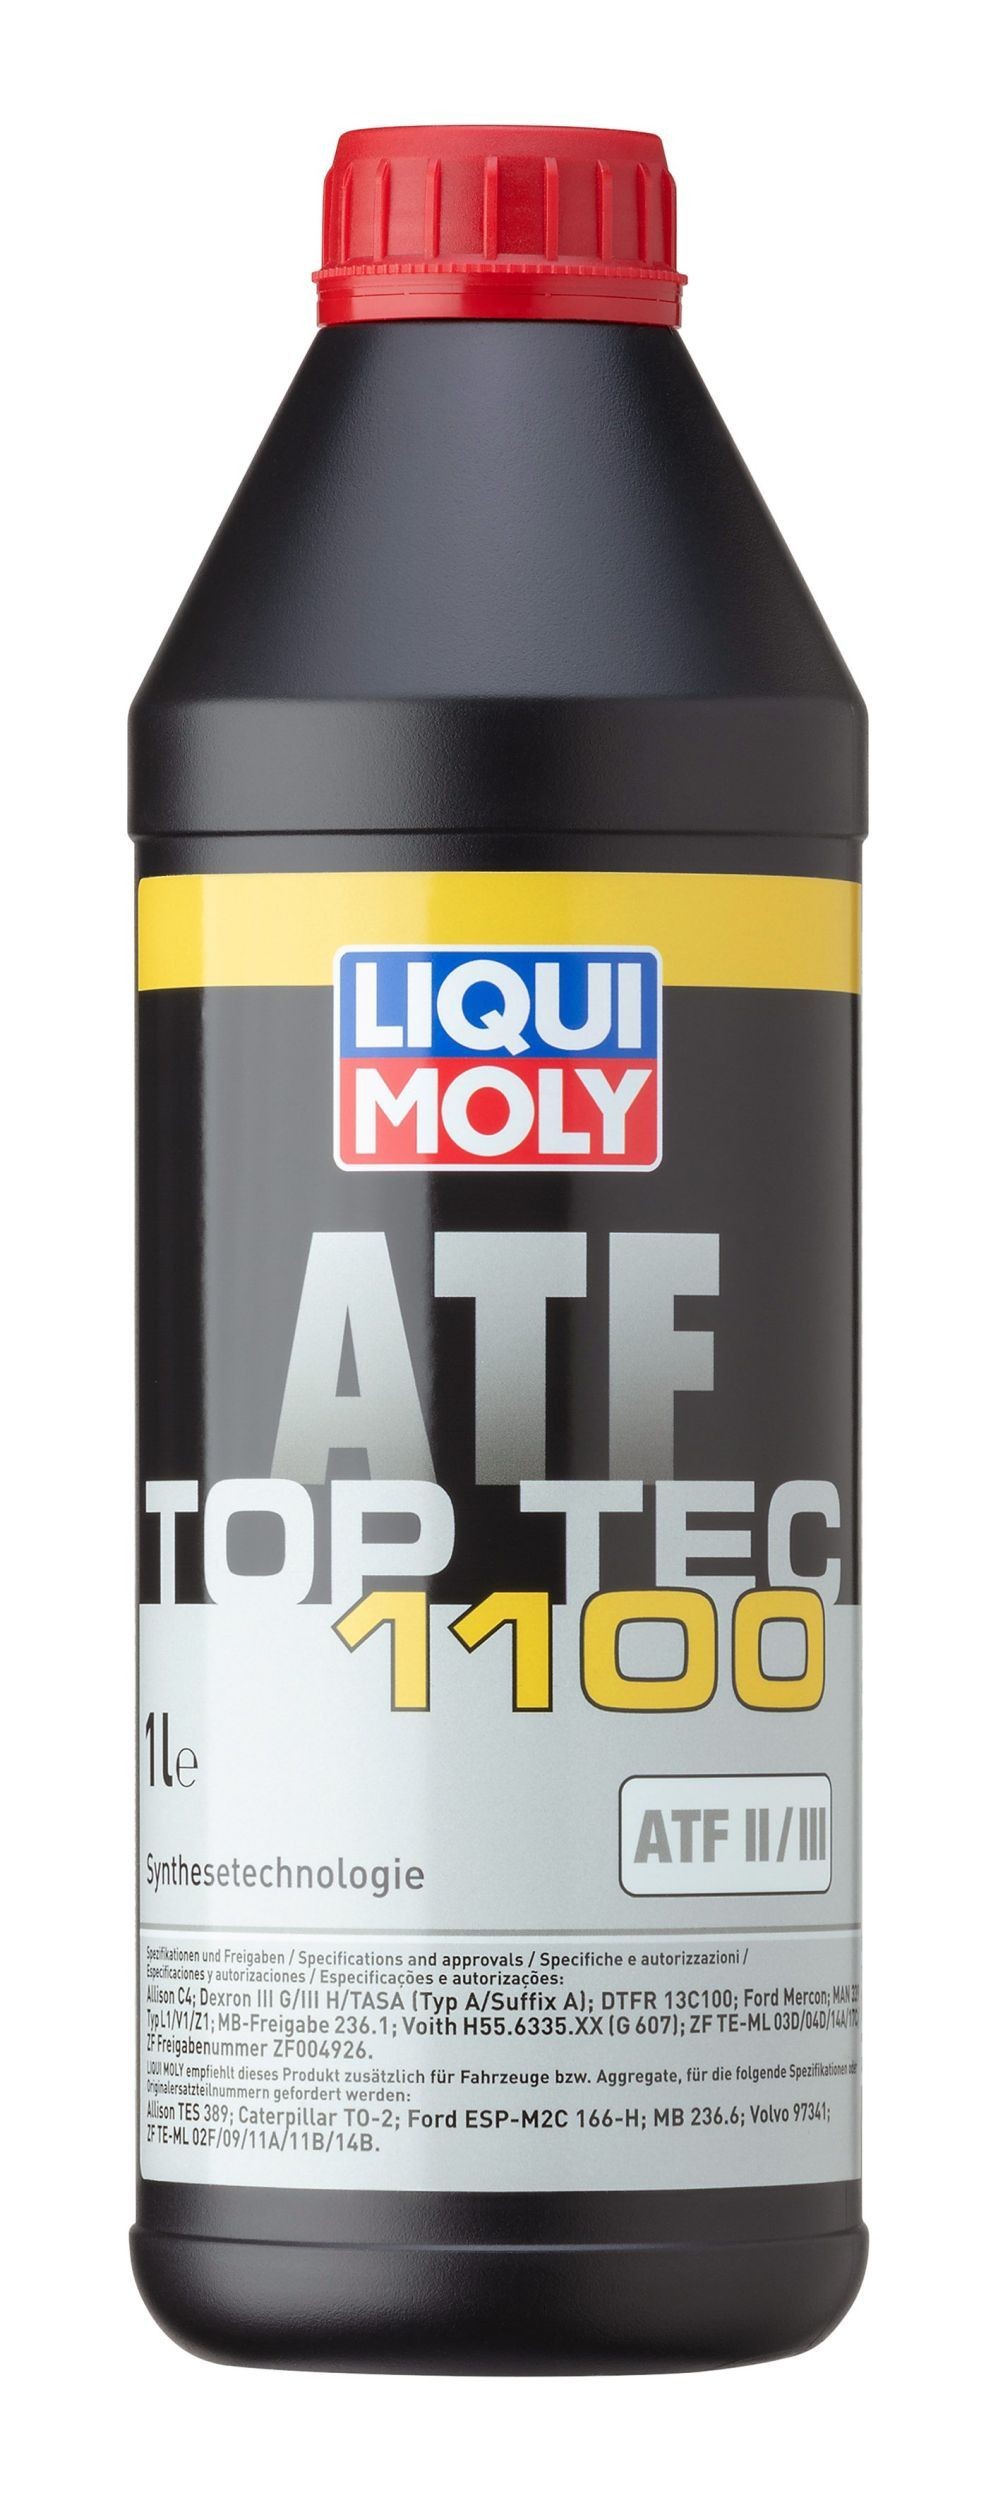 LIQUI MOLY Top Tec ATF, 1100 3651 Gear oil order